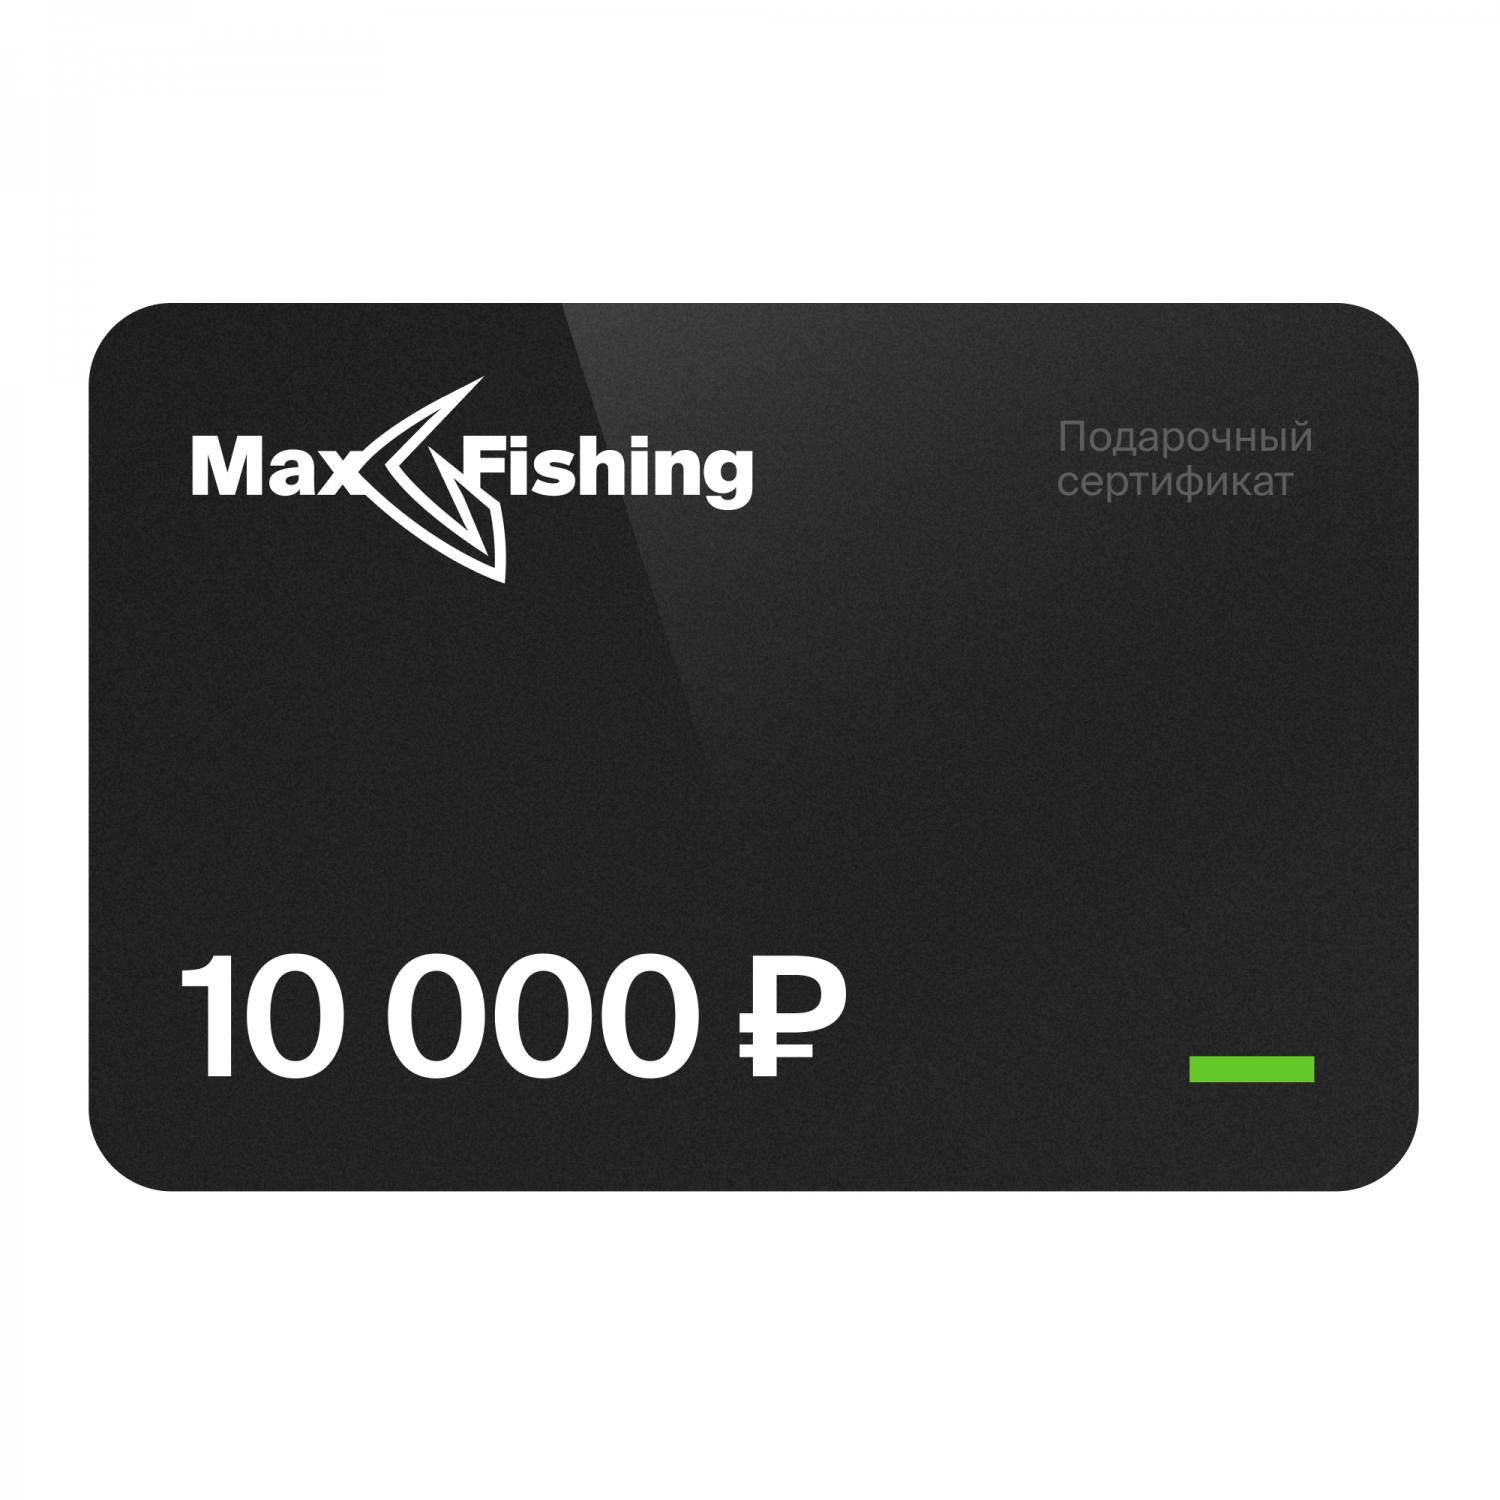 Подарочный сертификат MaxFishing 10 000 ₽ подарочный сертификат на 70 000 рублей